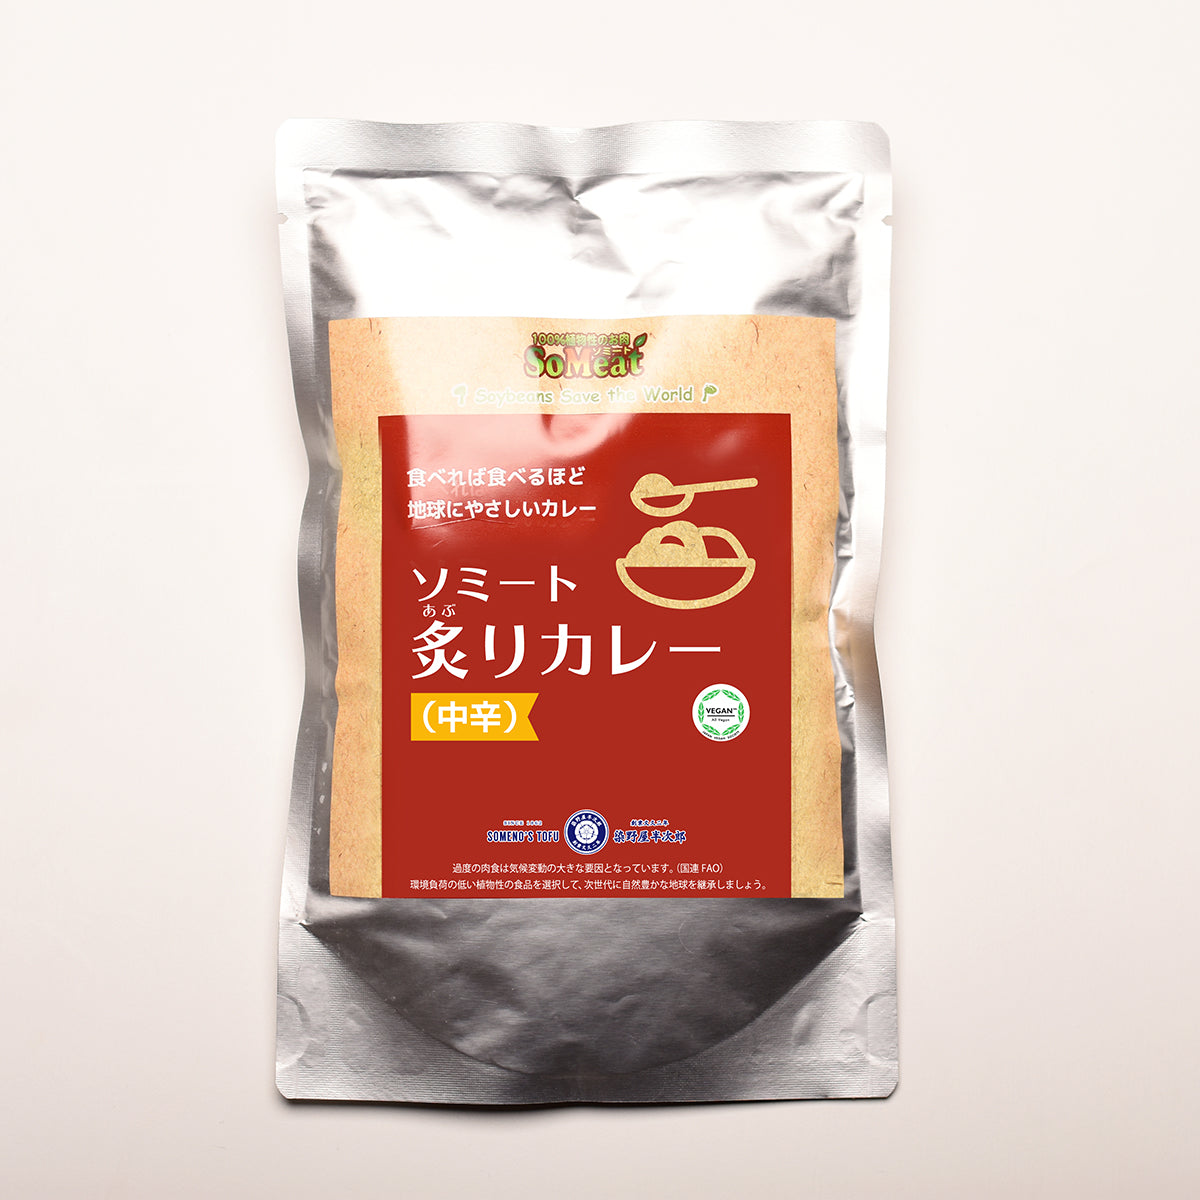 
                  
                    ソミート炙りカレー 4パック 【送料無料】
                  
                